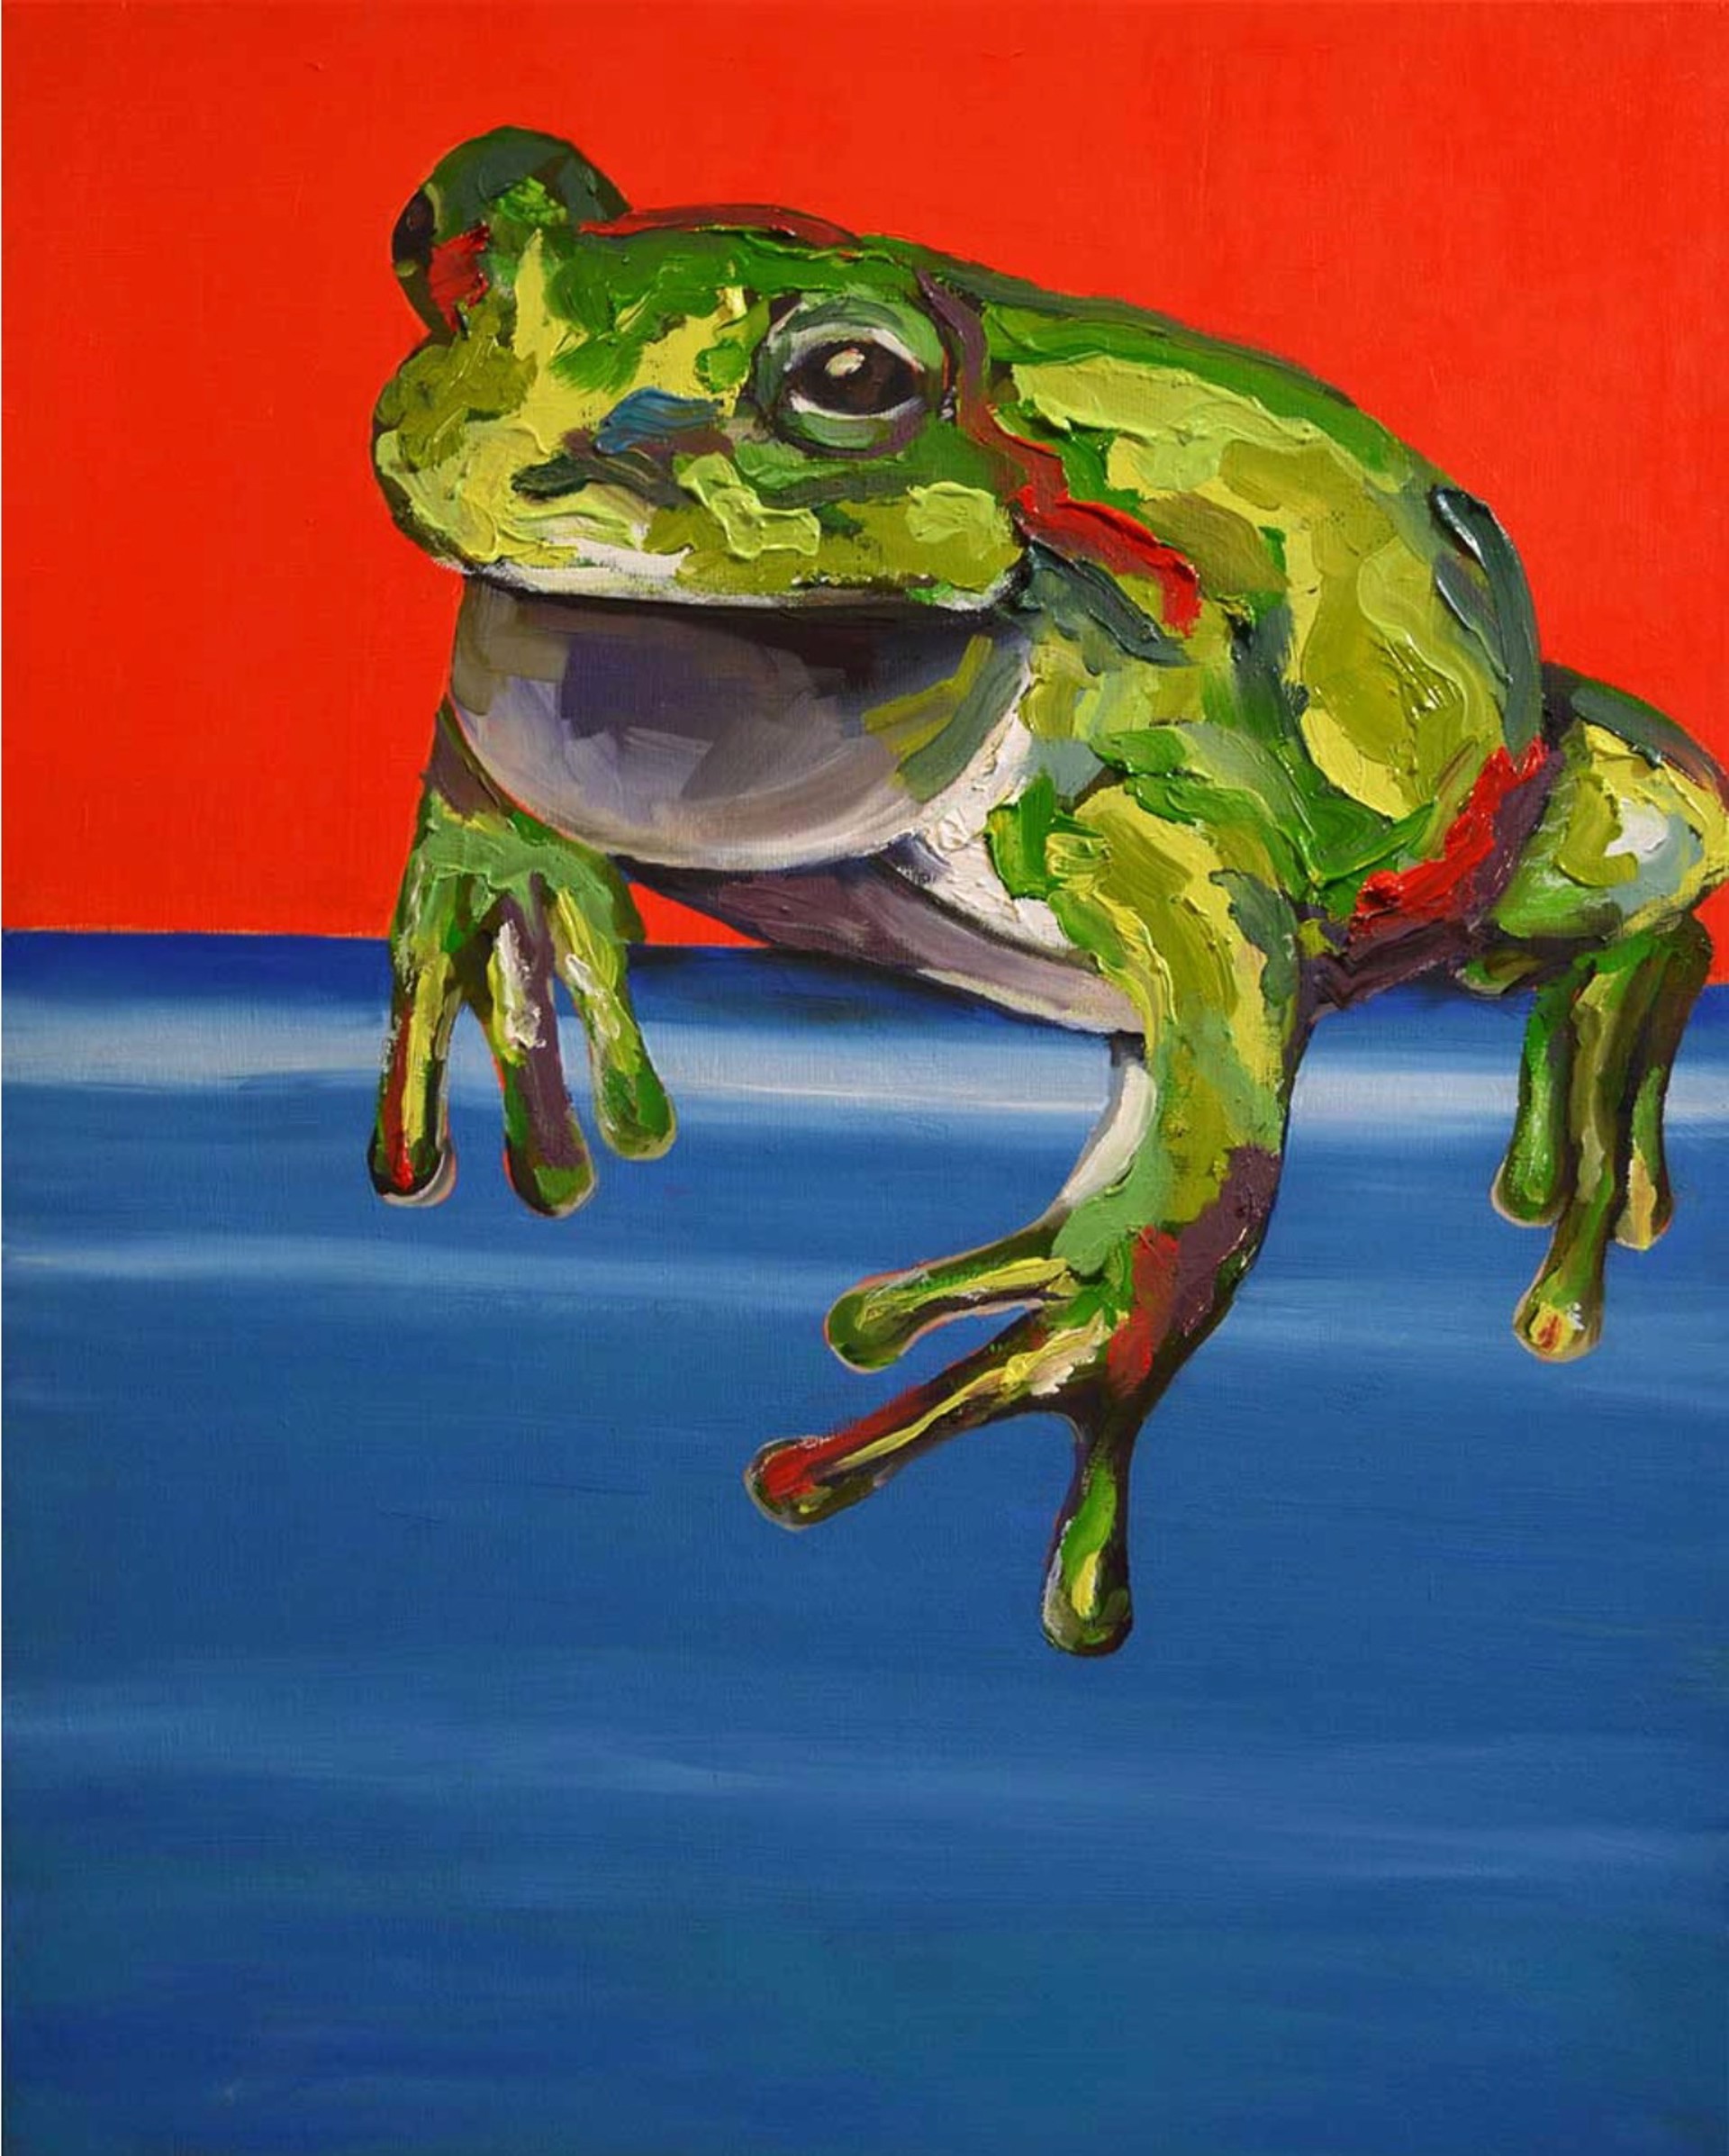 Animal Portrait Prints: Frog by Lizzie Wortham